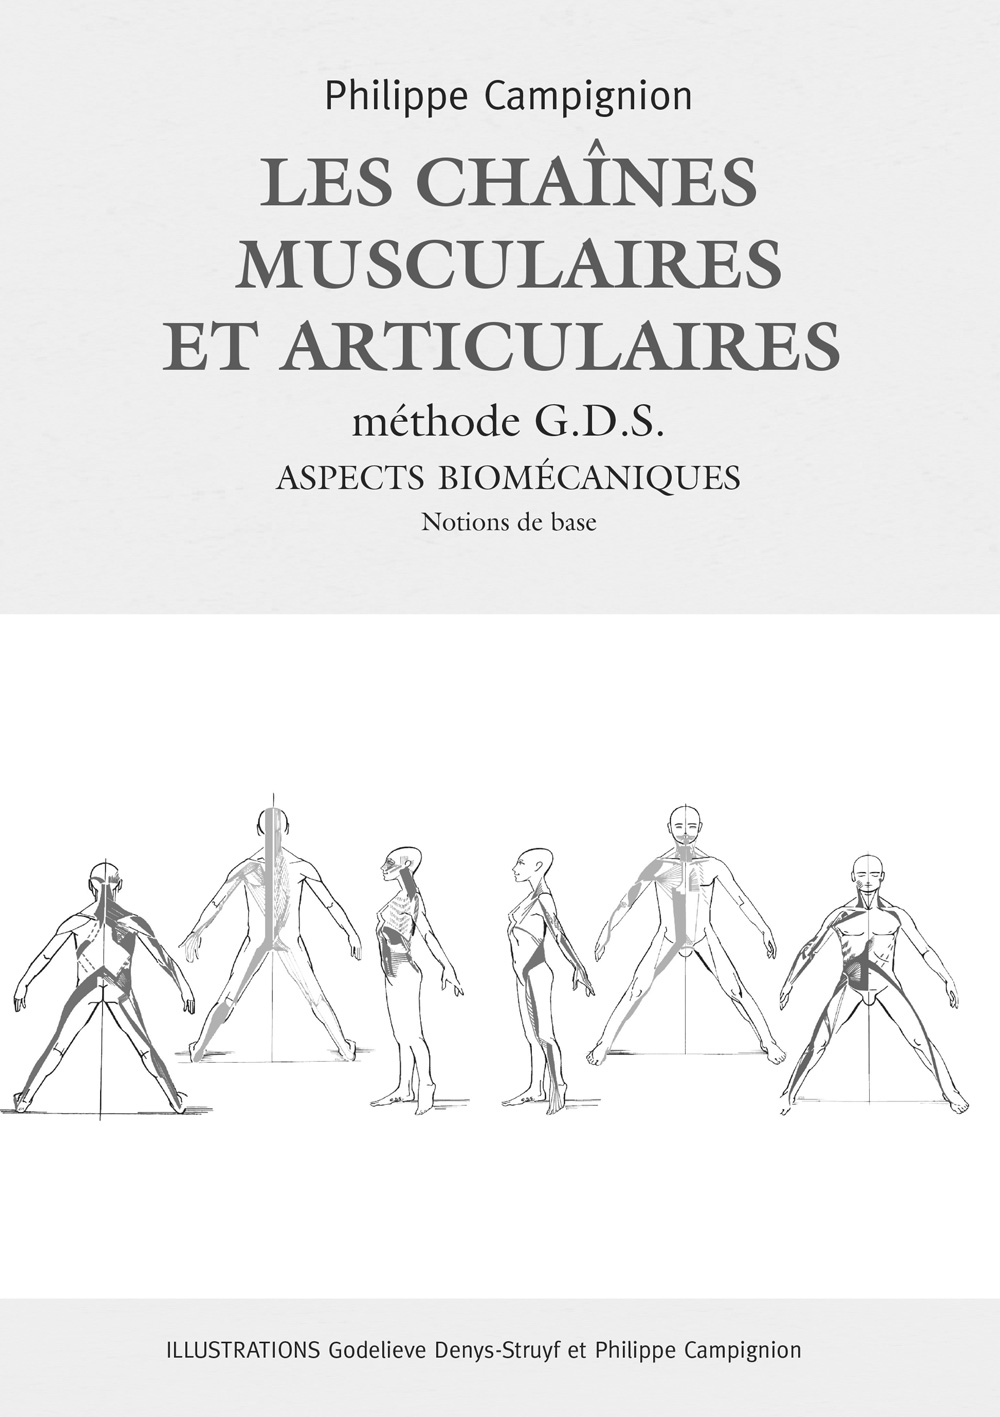 Les chaînes musculaires et articulaires Méthode GDS – Aspects biomécaniques Tome 1, Notions de base